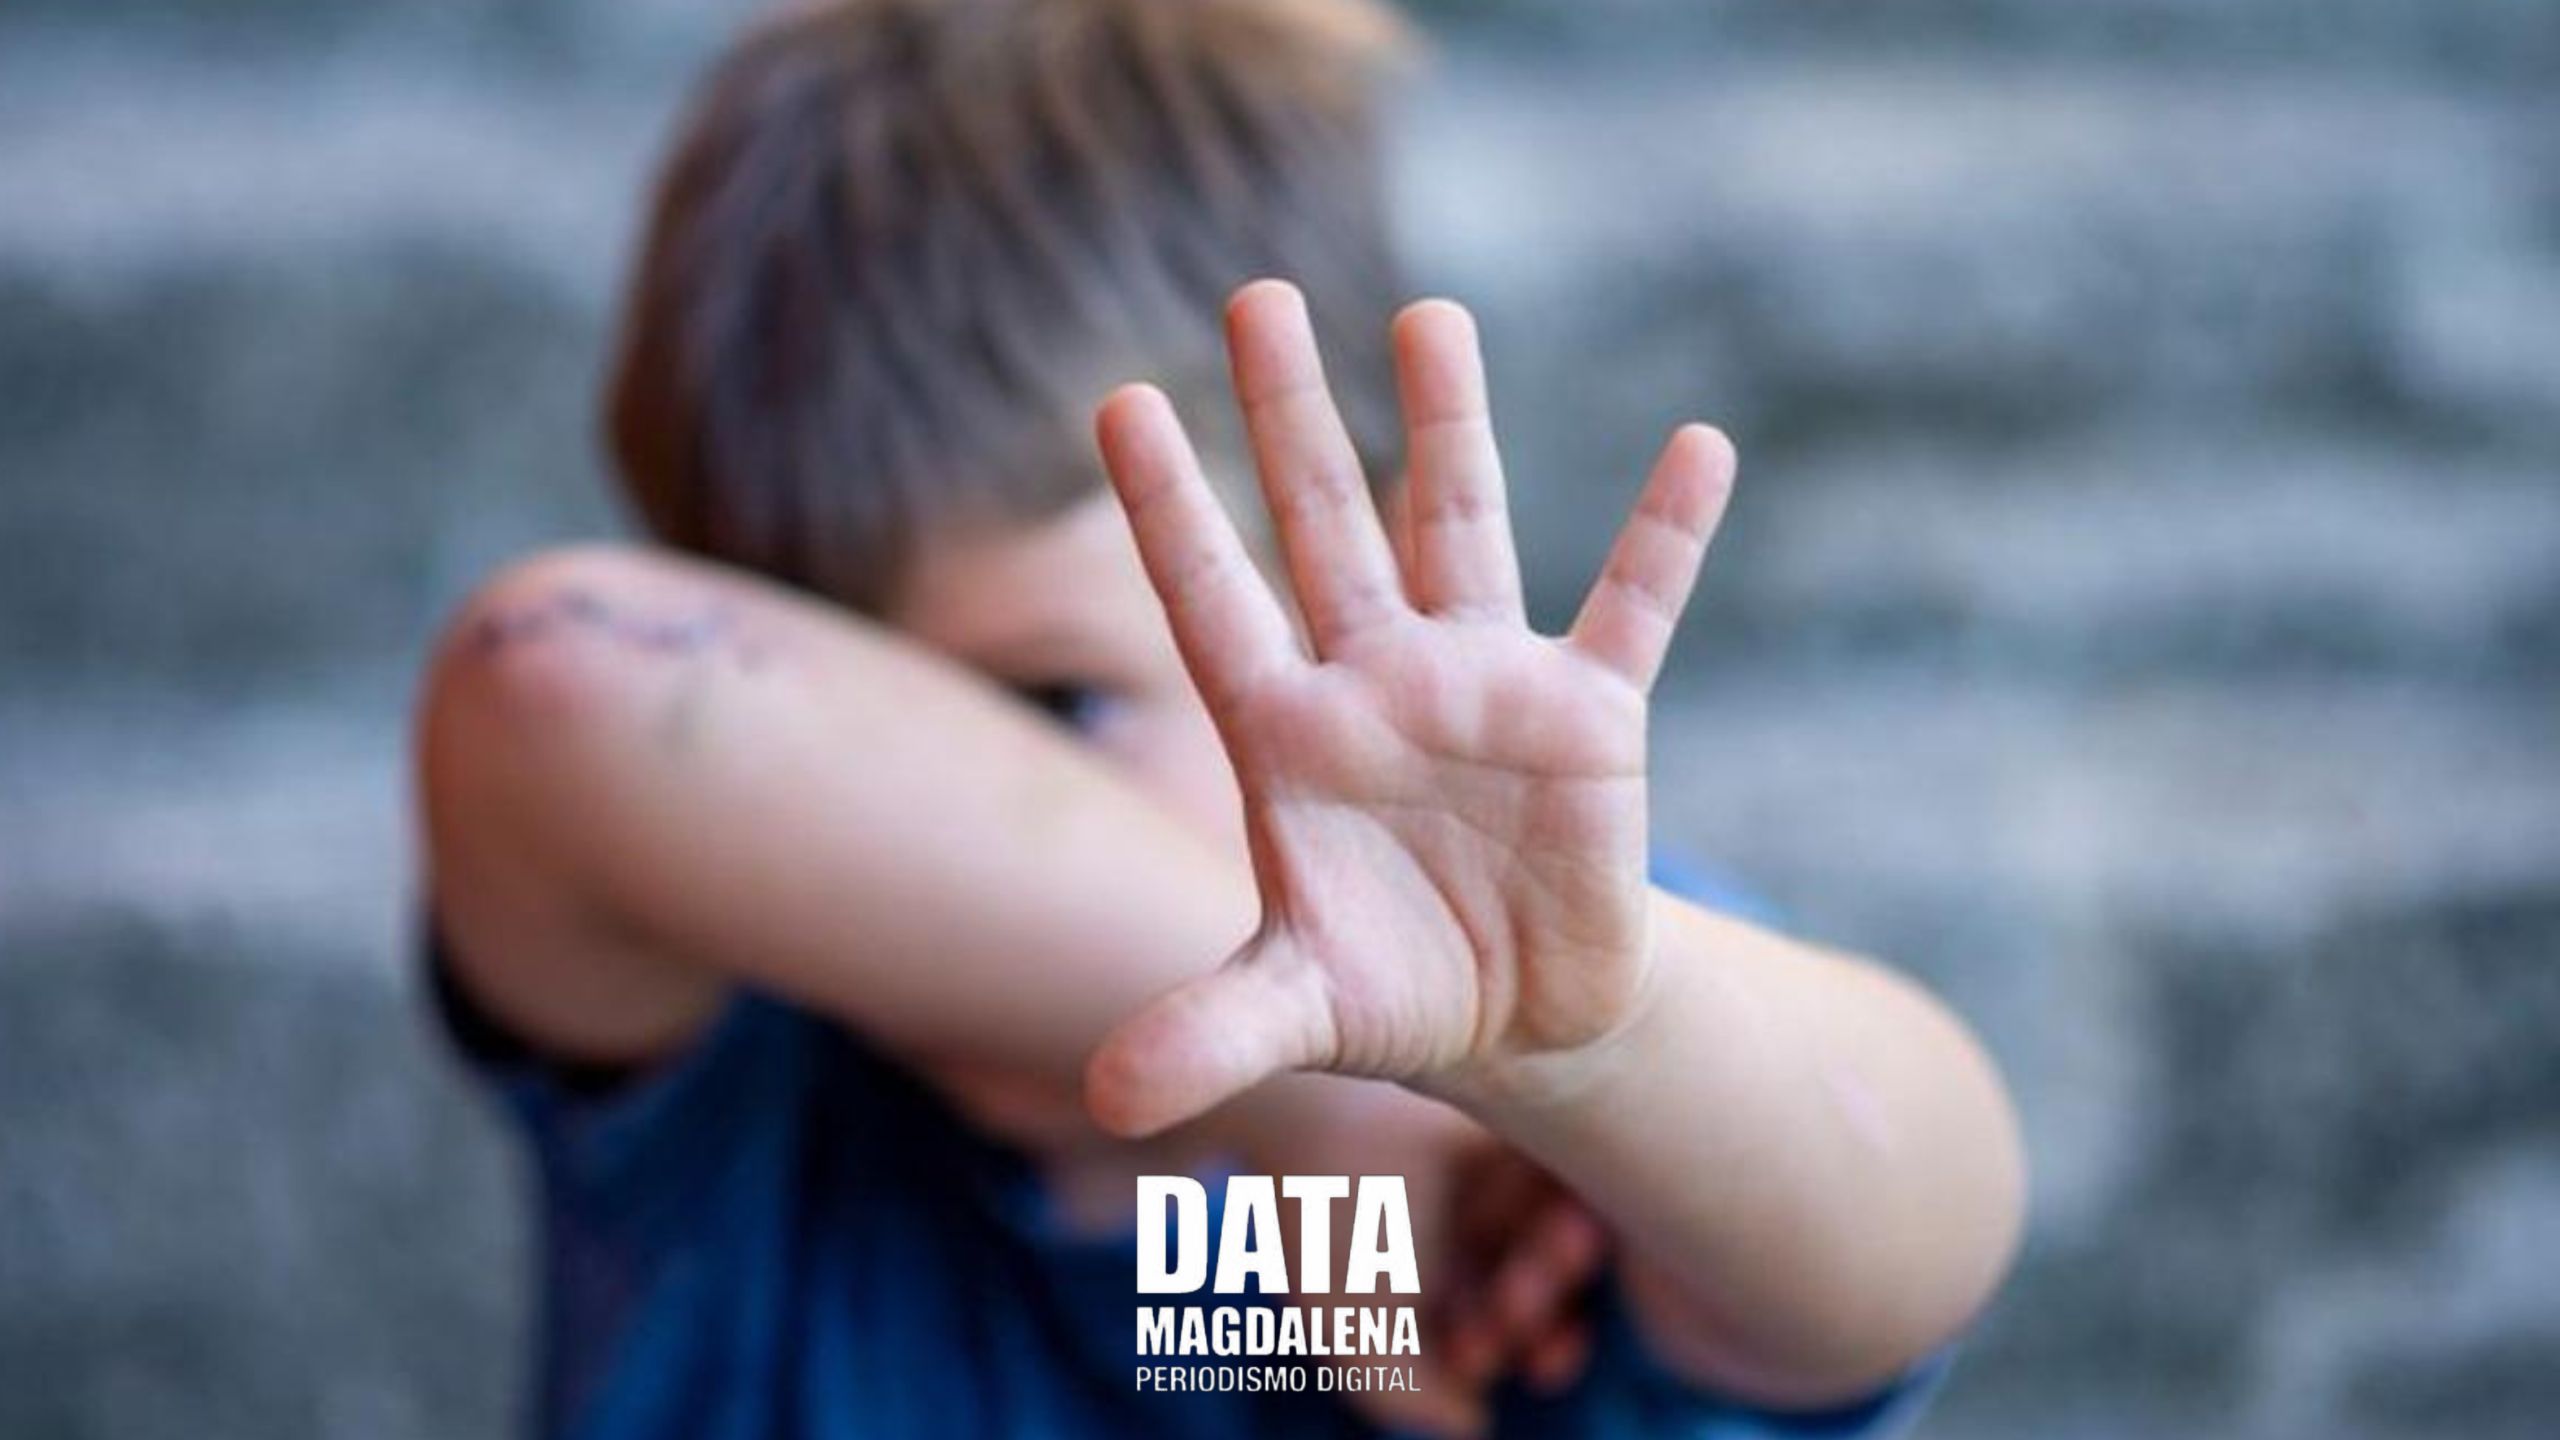 🚸Día Internacional de Lucha contra el Maltrato Infantil: Preocupantes datos en Argentina